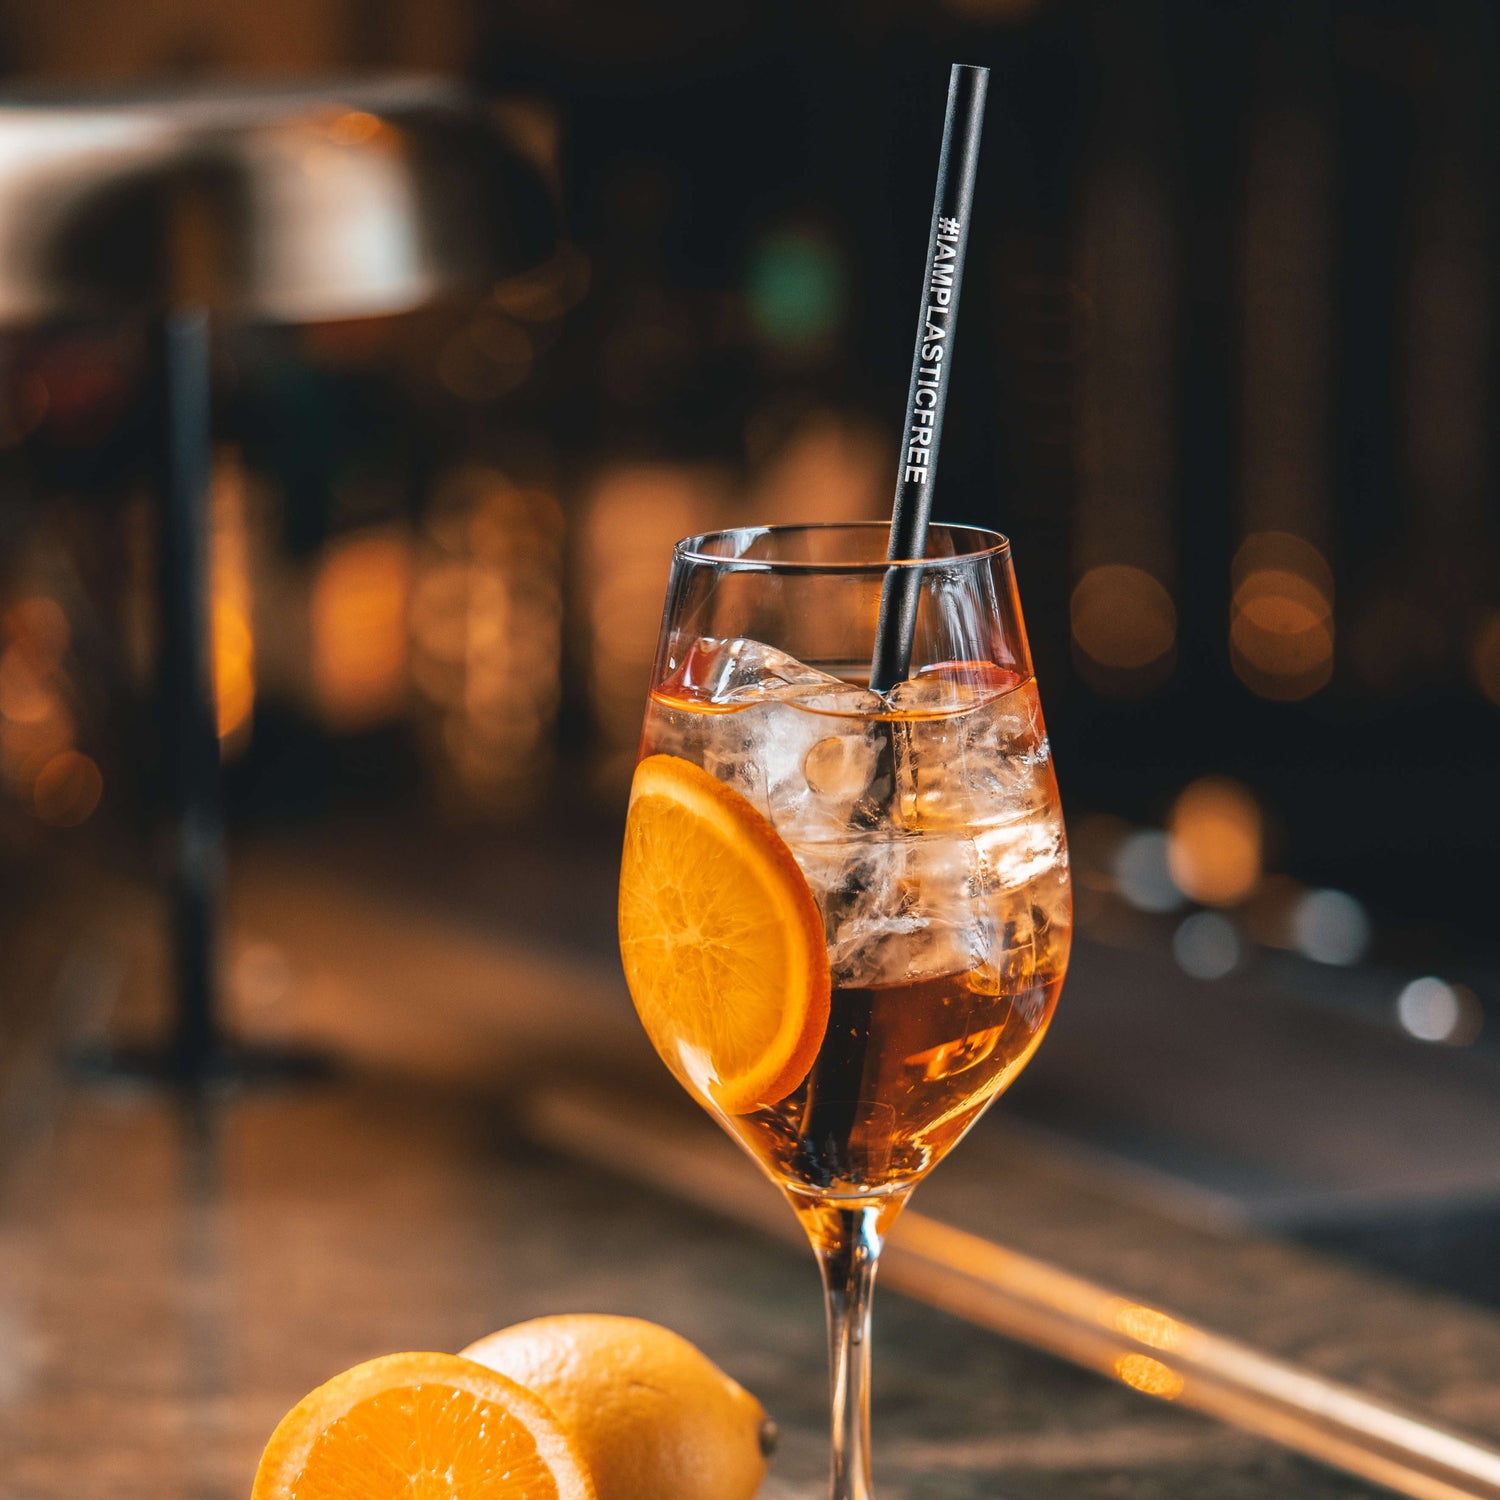 #IAMPLASTICFREE Trinkhalm 2.0 in Weißwein-Glas mit klarem, orangen Cocktail, Eiswürfeln und einer Orangenscheibe, dabei eine halbierte Orange